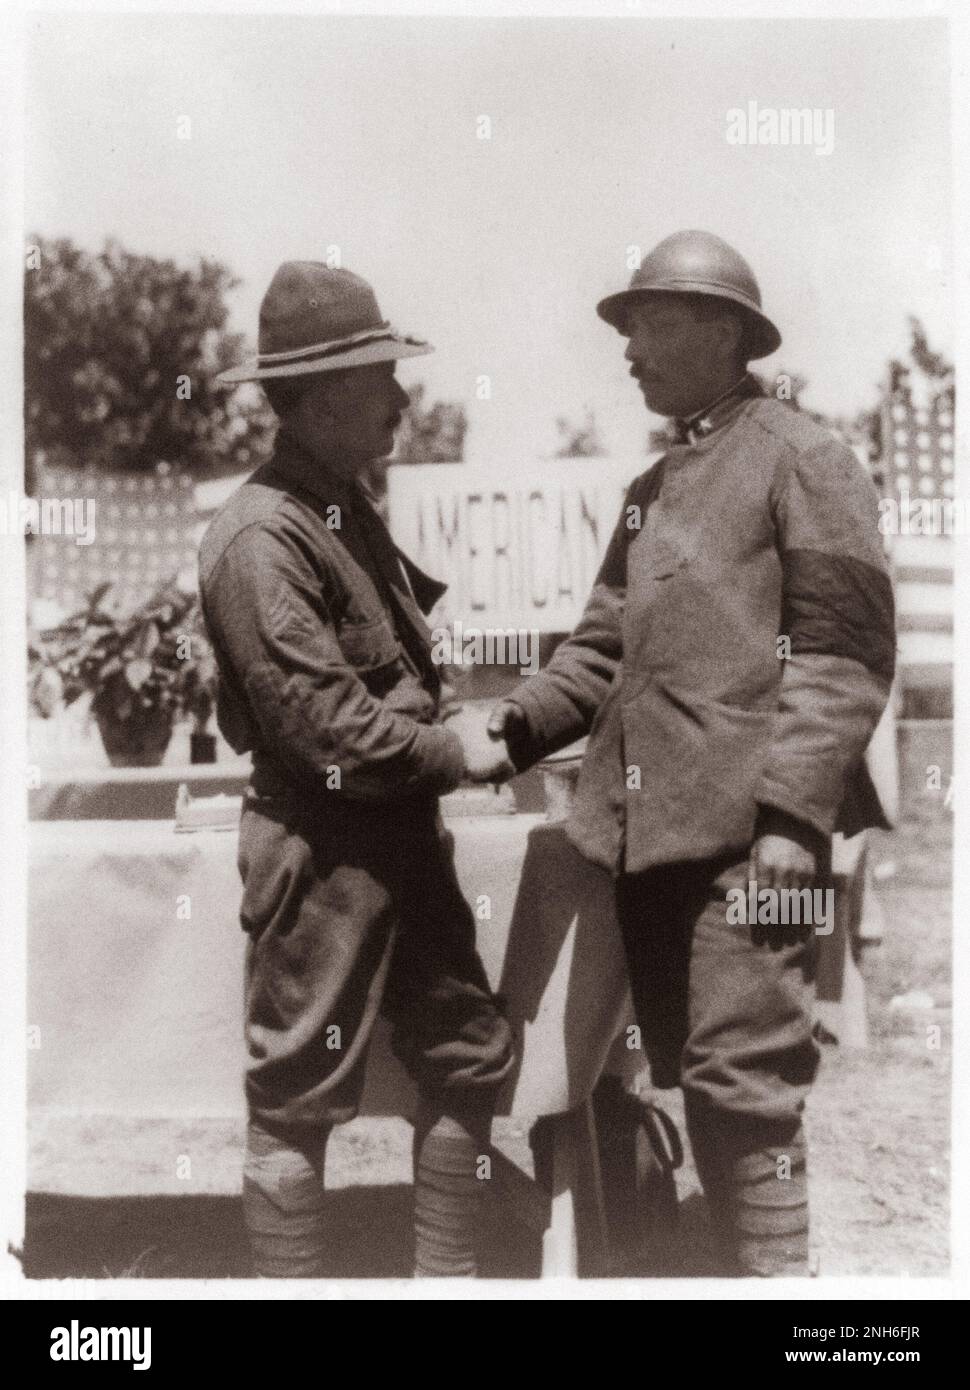 Erster Weltkrieg Italienische Front: Neue Freunde gefunden. Ein amerikanischer Soldat und ein italienischer Soldat, der sich die Hand schüttelt. 1917-1918 Stockfoto